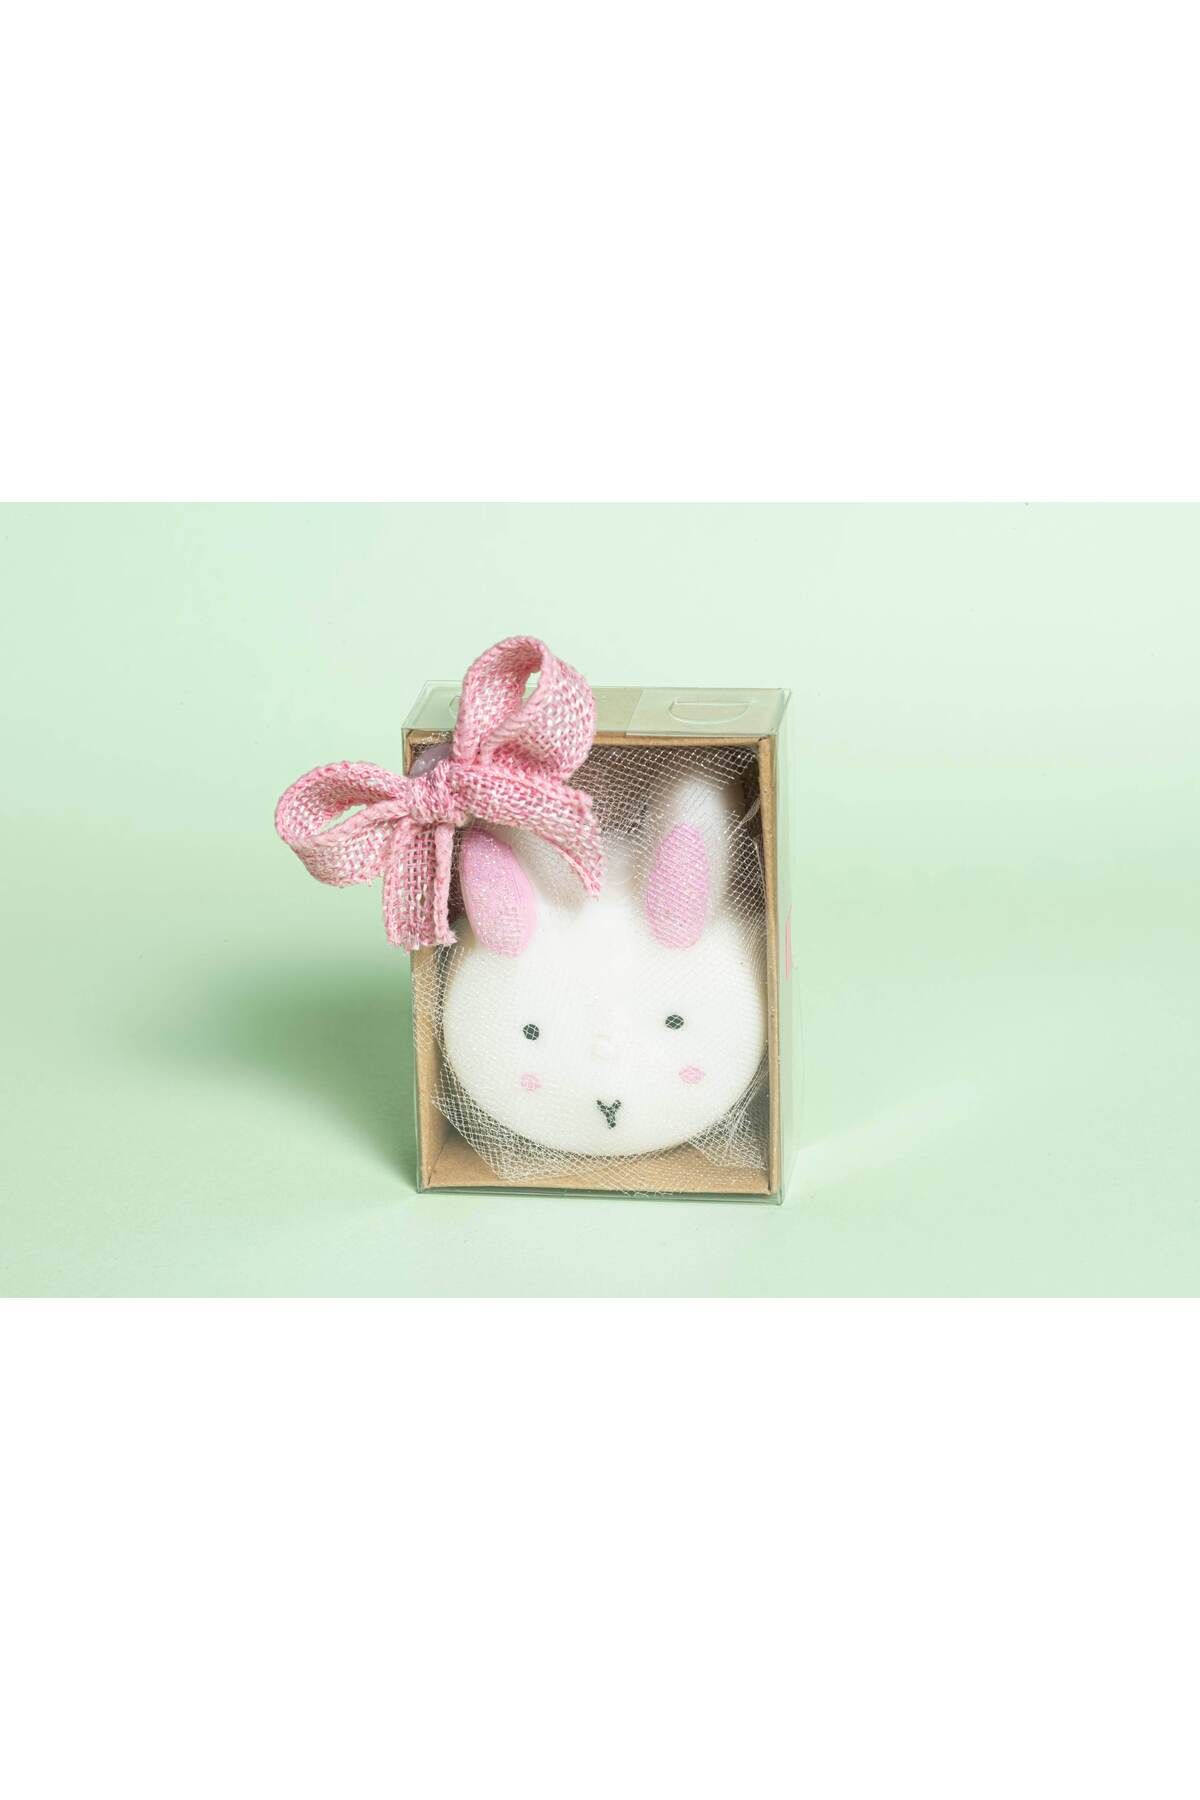 Bouquet De Lumieres Tavşan Mum 10 ADET / Baby Shower, Doğum Günü, Cinsiyet Partisi